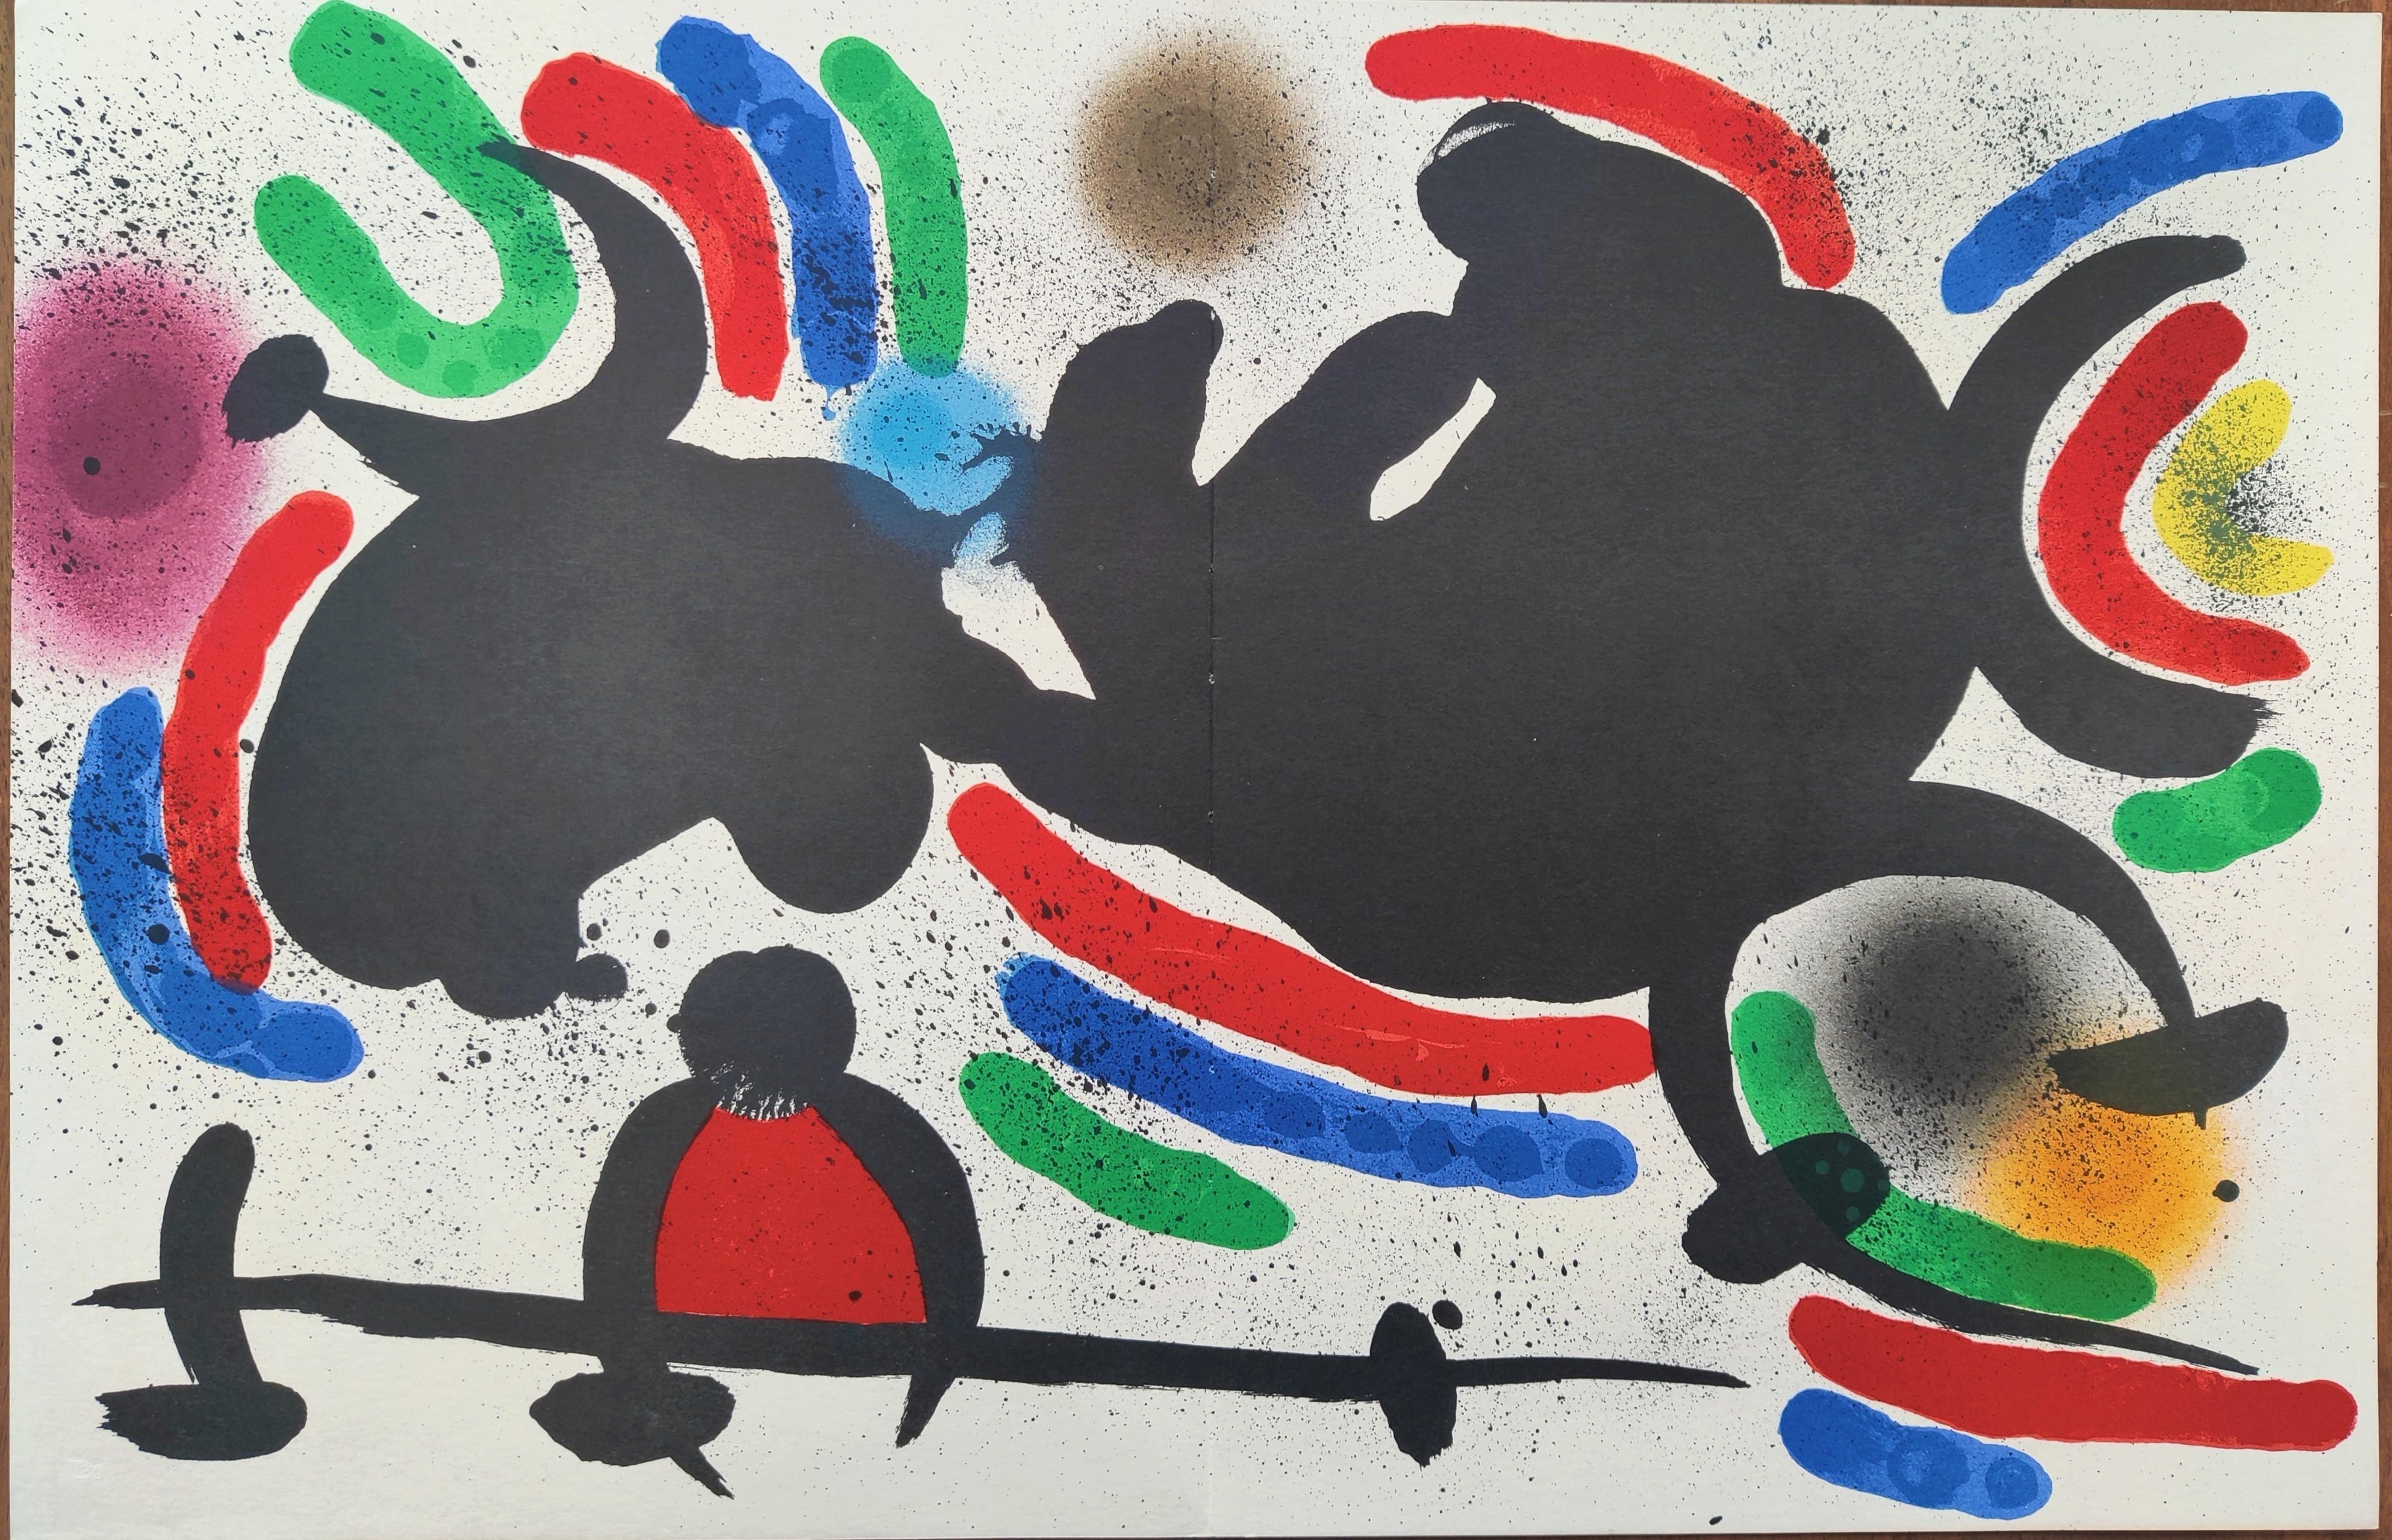 Joan Miró --  Lithographie I, planche IV, 1972
Lithographie couleur
Éditeur : Ediciones Poligrafa, S.A., Barcelone
Catalogue : Mourlot 866
Taille : 42,5 × 60 cm 
Non signé